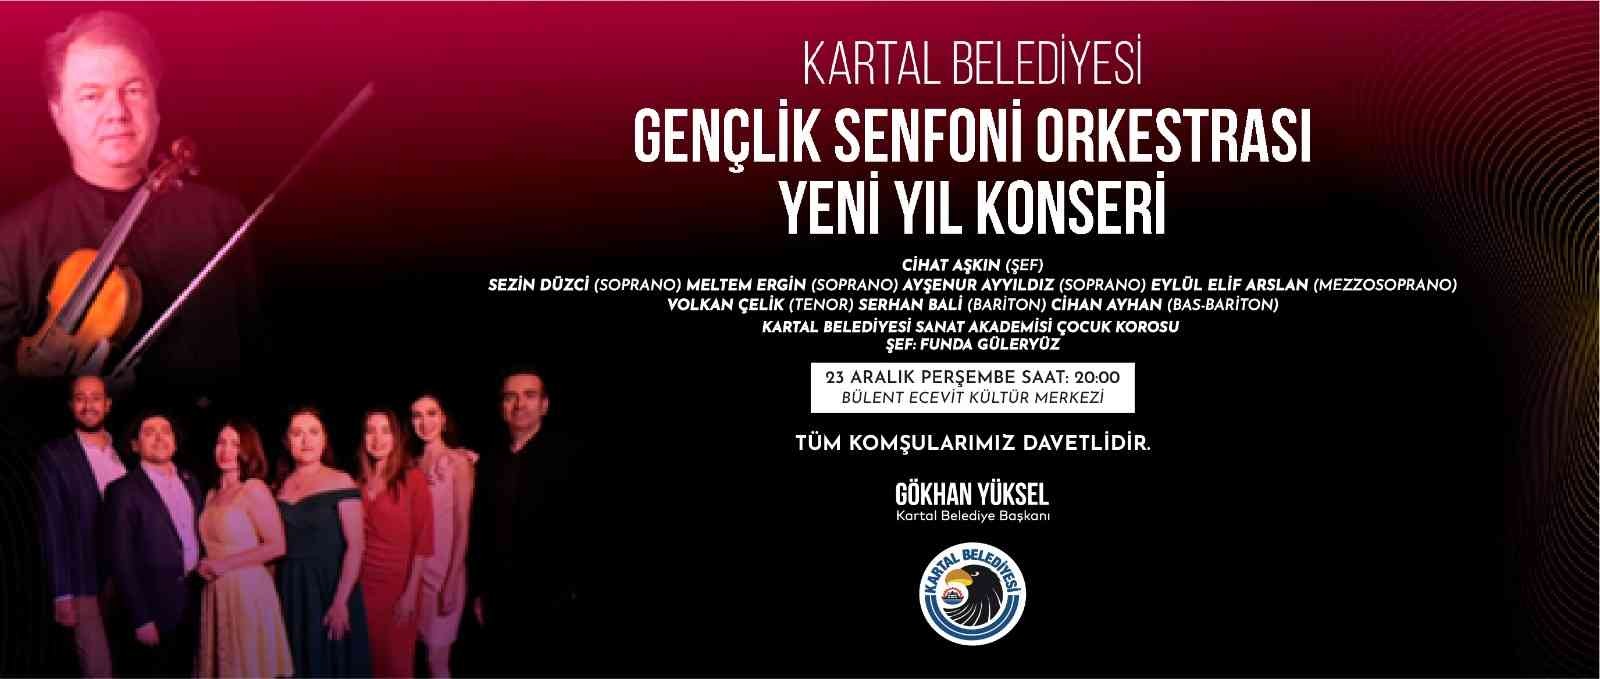 Kartal Belediyesi Gençlik Senfoni Orkestrası yeni yıl konseriyle sahnede #istanbul